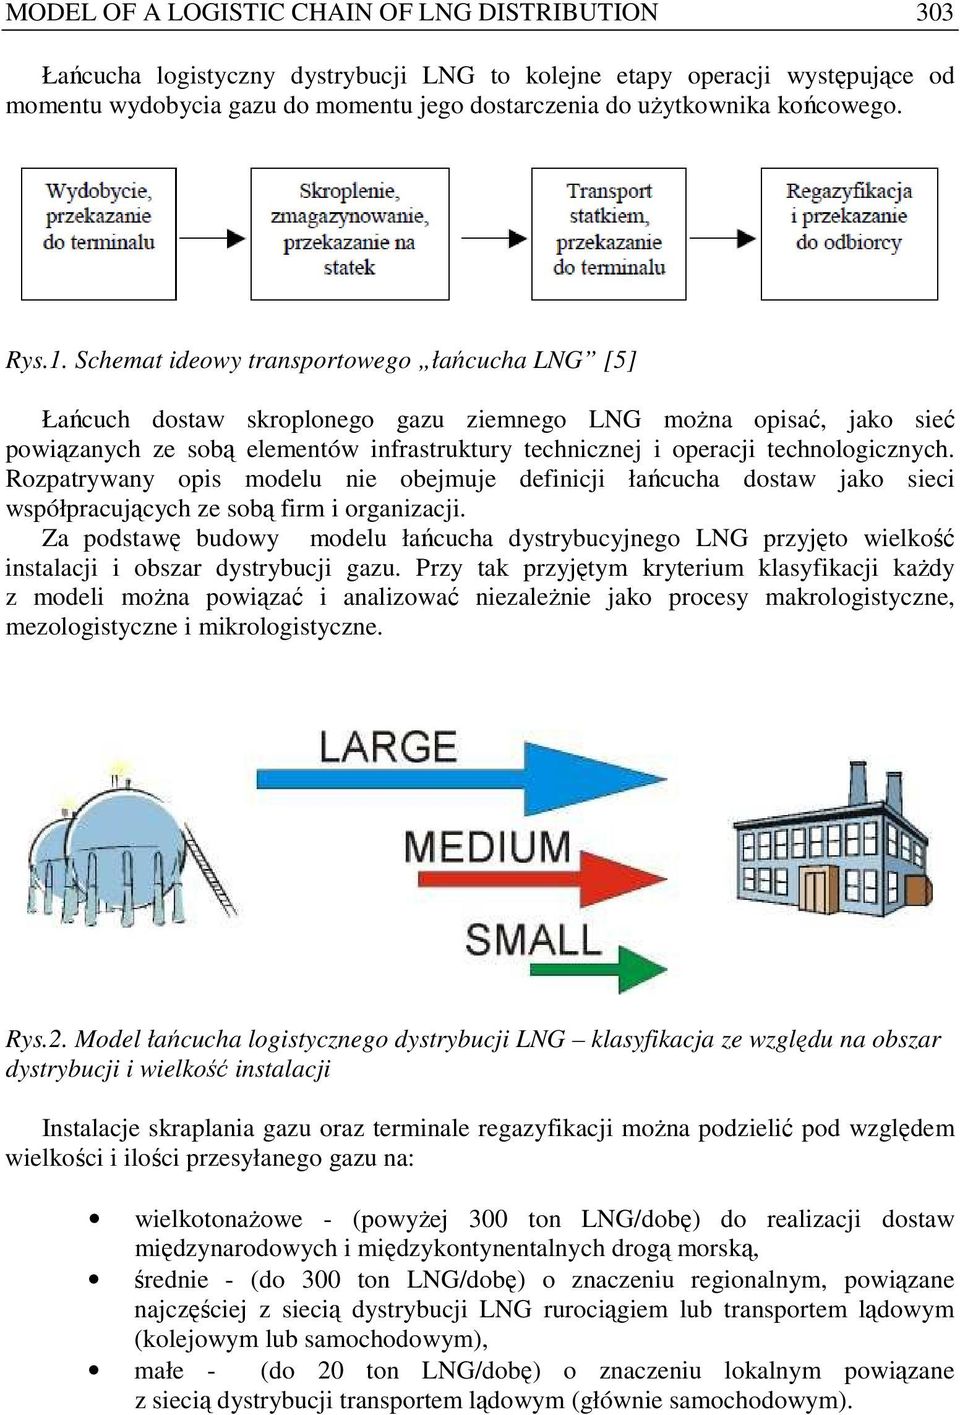 Schemat ideowy transportowego łańcucha LNG [5] Łańcuch dostaw skroplonego gazu ziemnego LNG moŝna opisać, jako sieć powiązanych ze sobą elementów infrastruktury technicznej i operacji